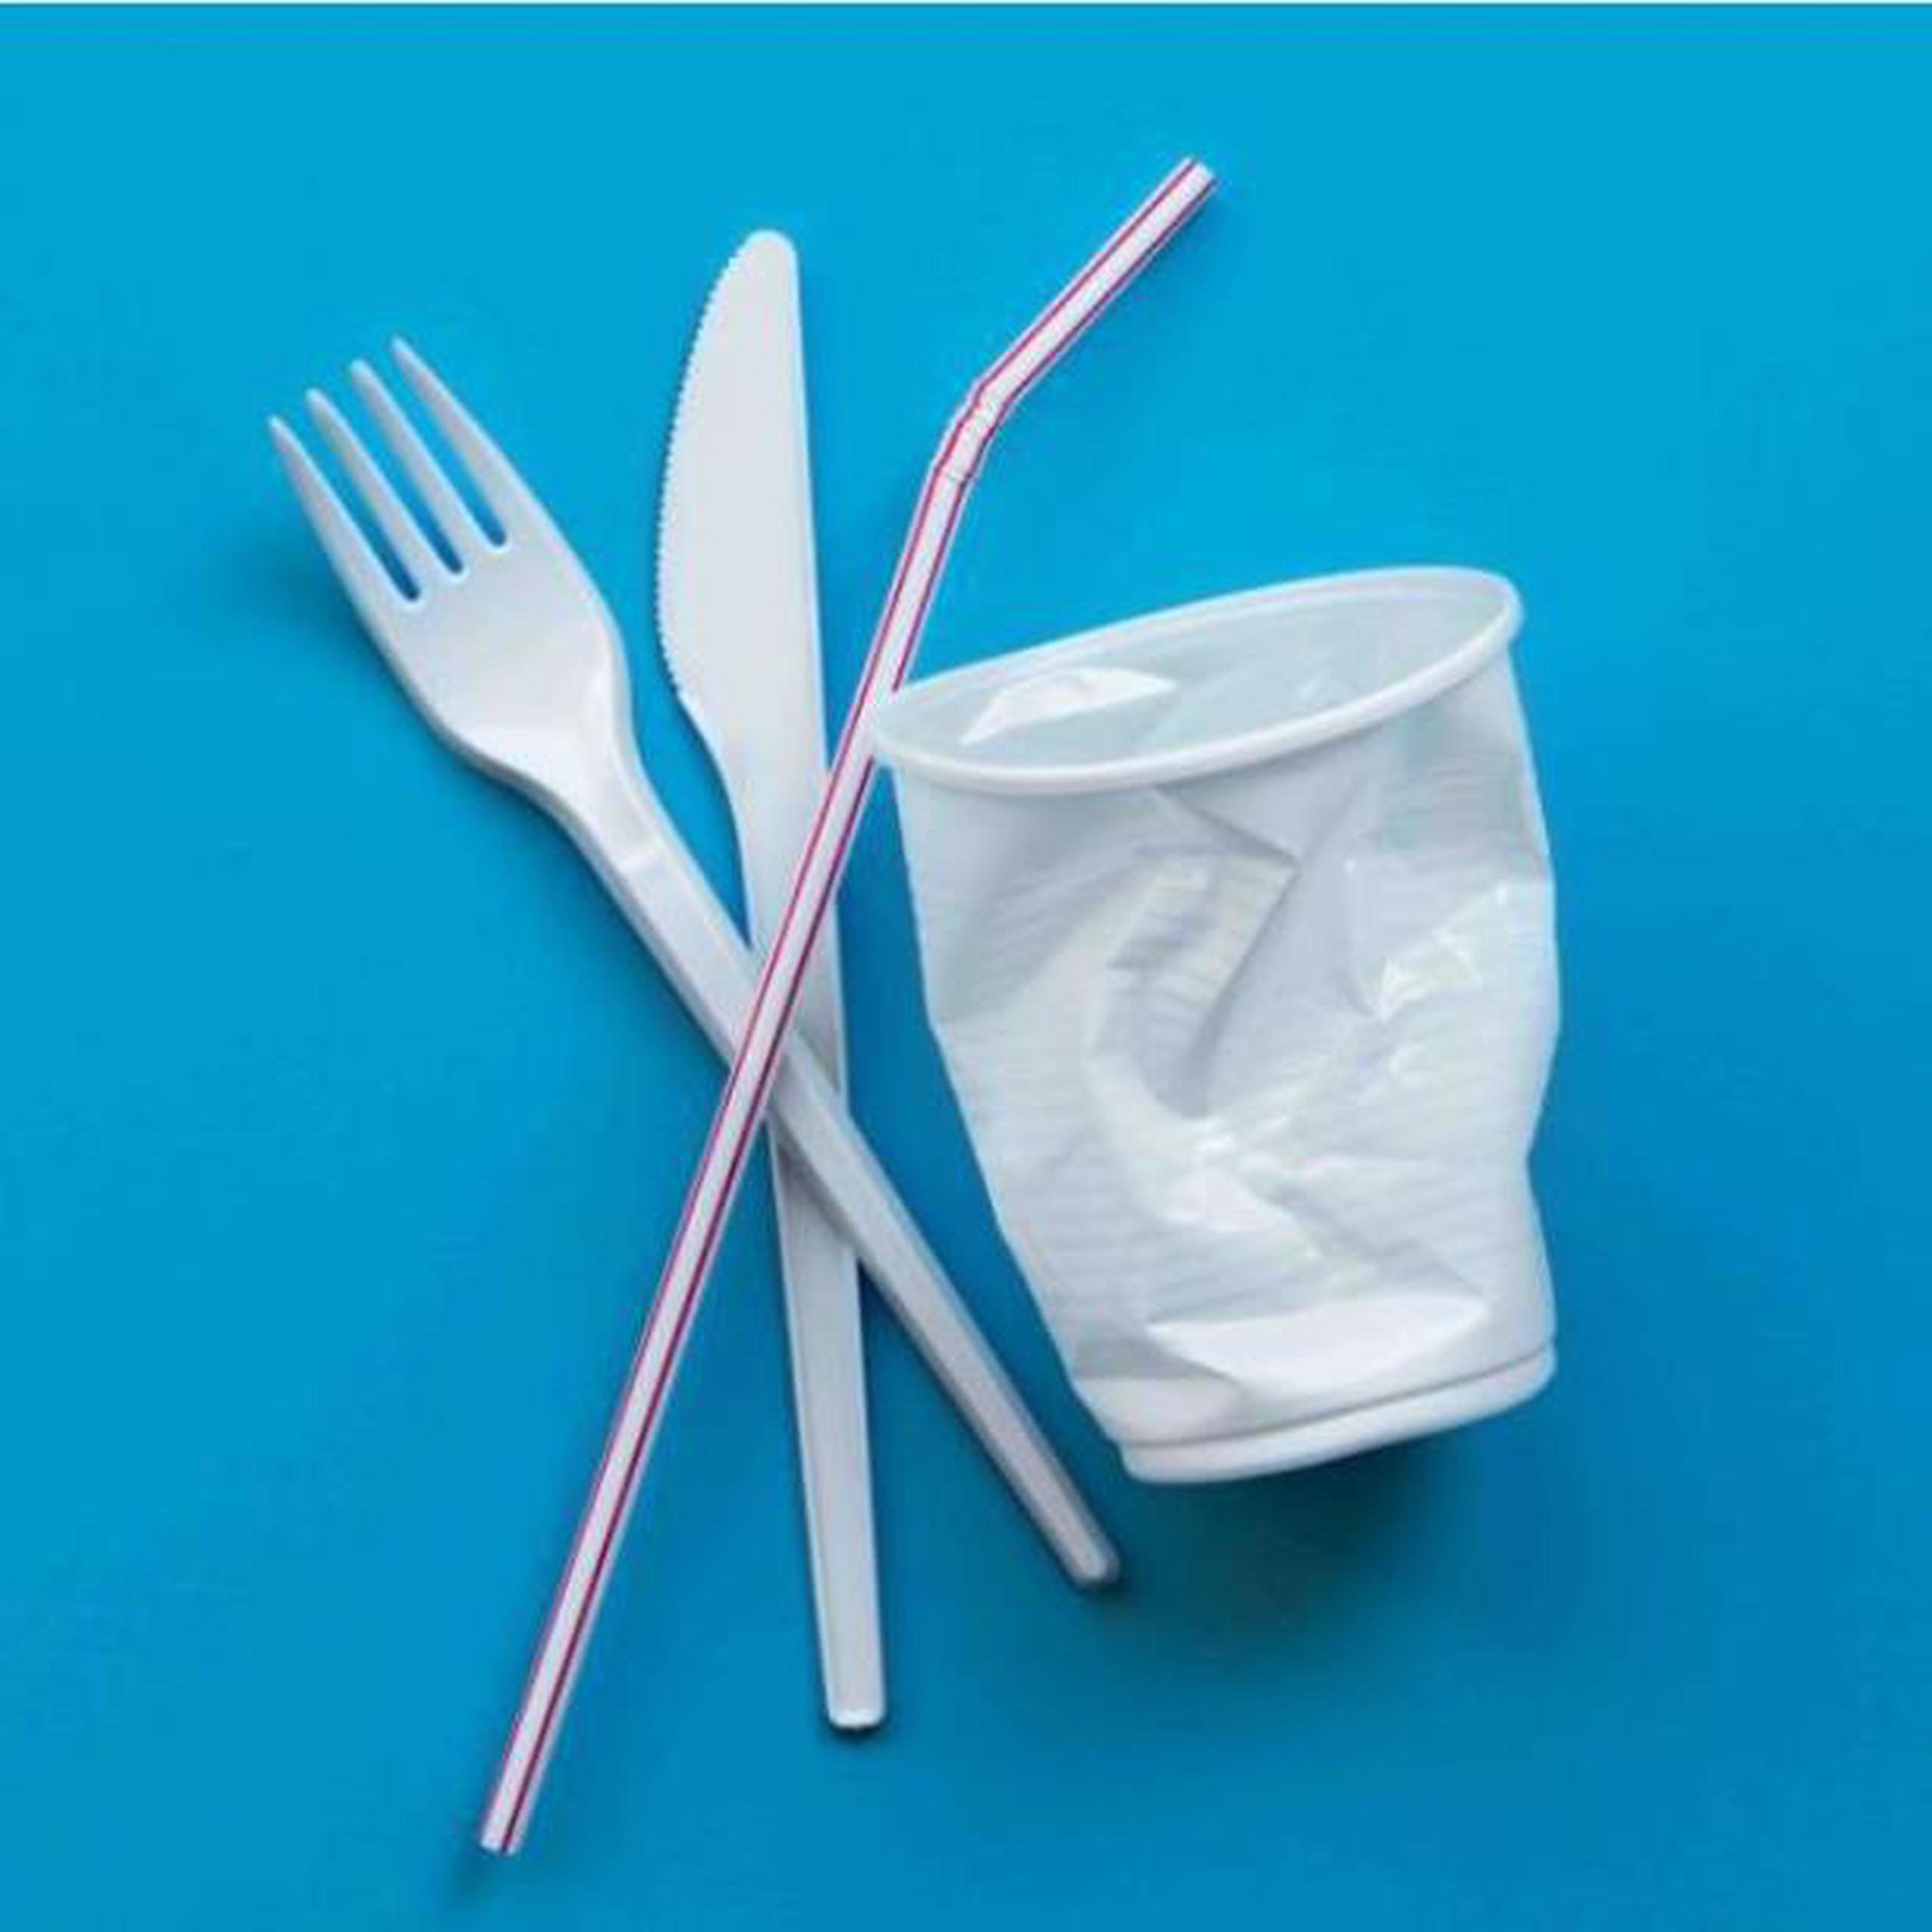 La medida define el utensilio plástico de un solo uso, el artefacto de material plástico vendido y utilizado voluntariamente para el consumo de alimentos por los seres humanos. (Archivo)